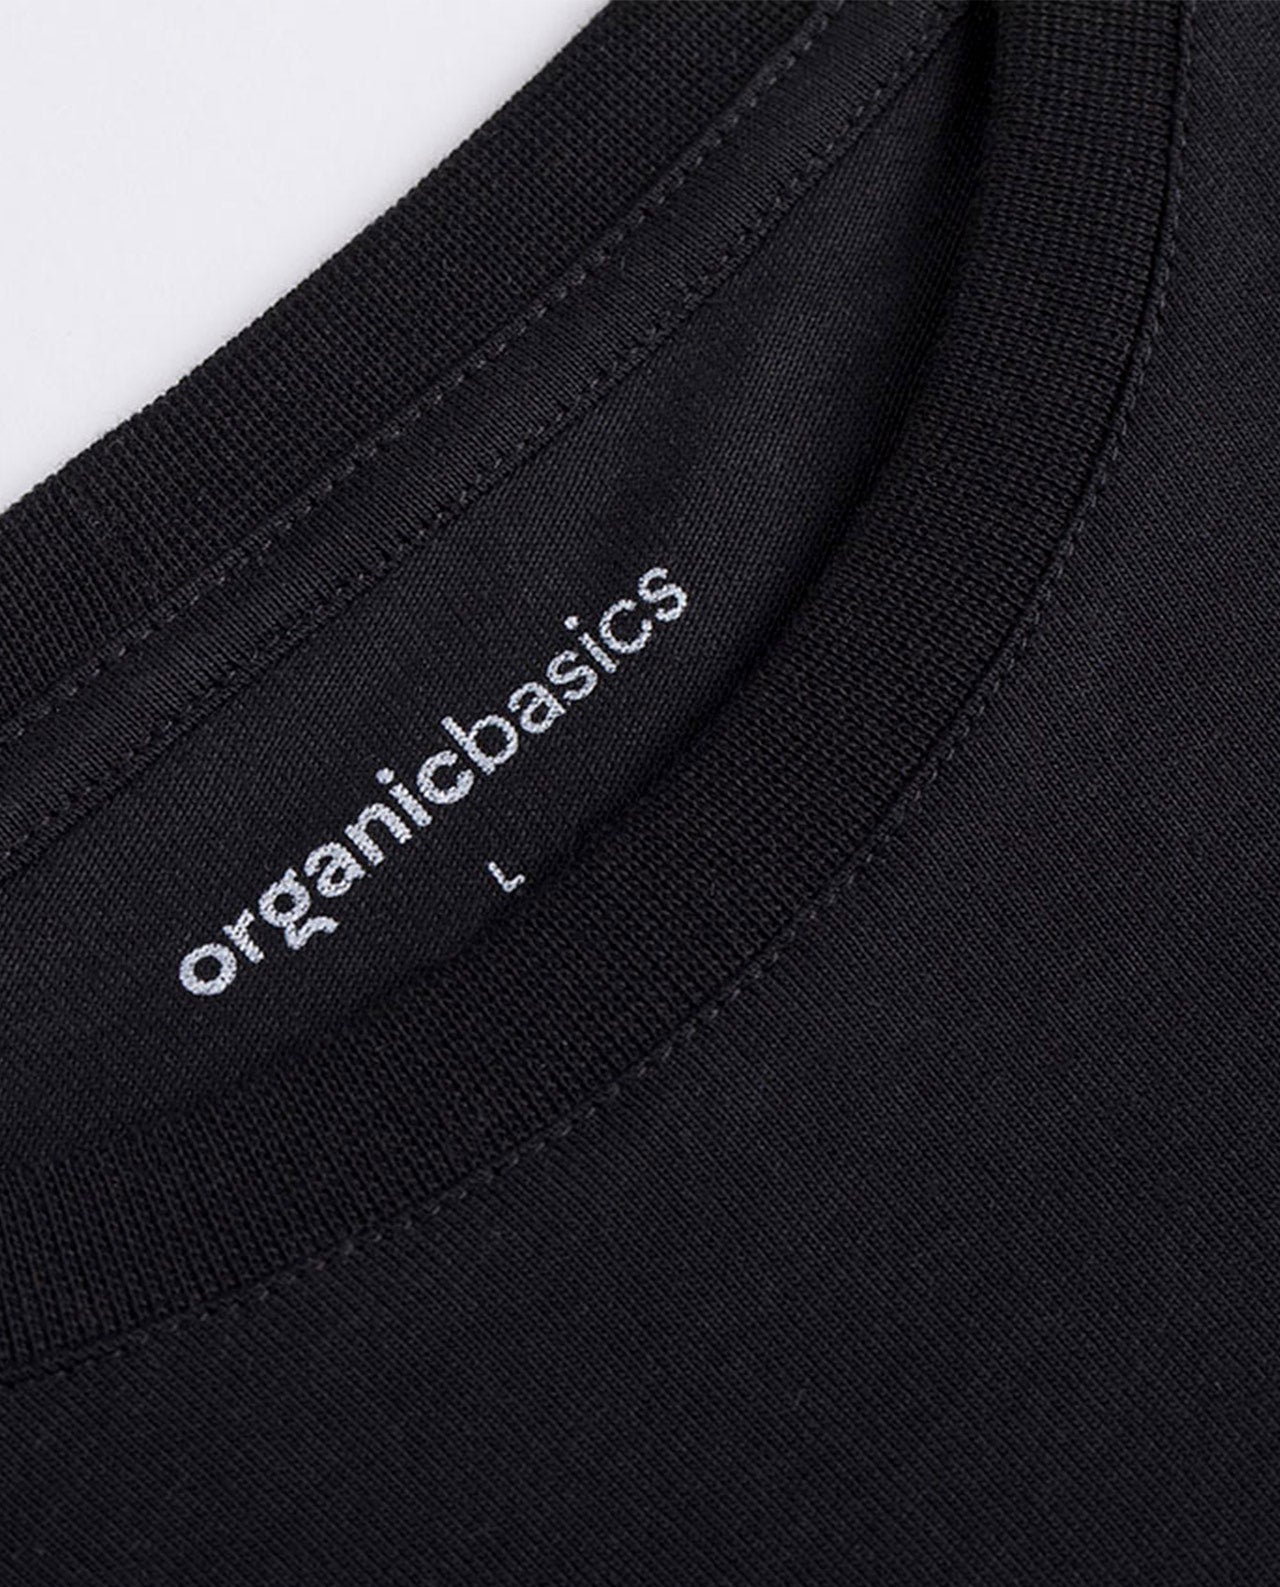 marché commun organic basics t-shirt homme manches courtes coton biologique basique éco-responsable éthique noir